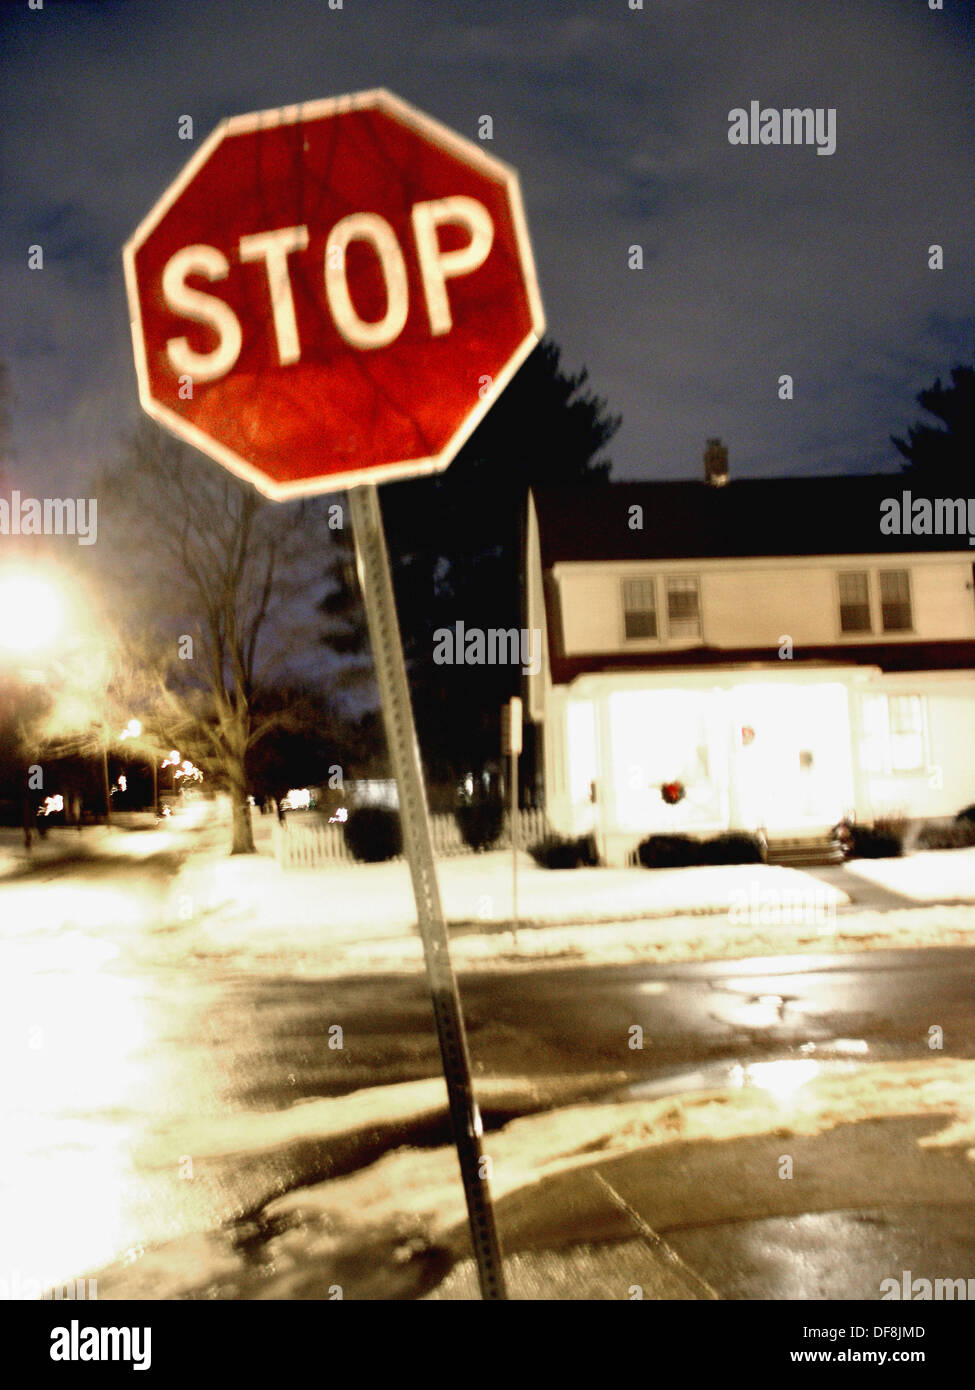 Un panneau d'arrêt rouge vif est capturés la nuit sur une rue de banlieue  avec un léger flou, créant un effet fantomatique, picturale Photo Stock -  Alamy